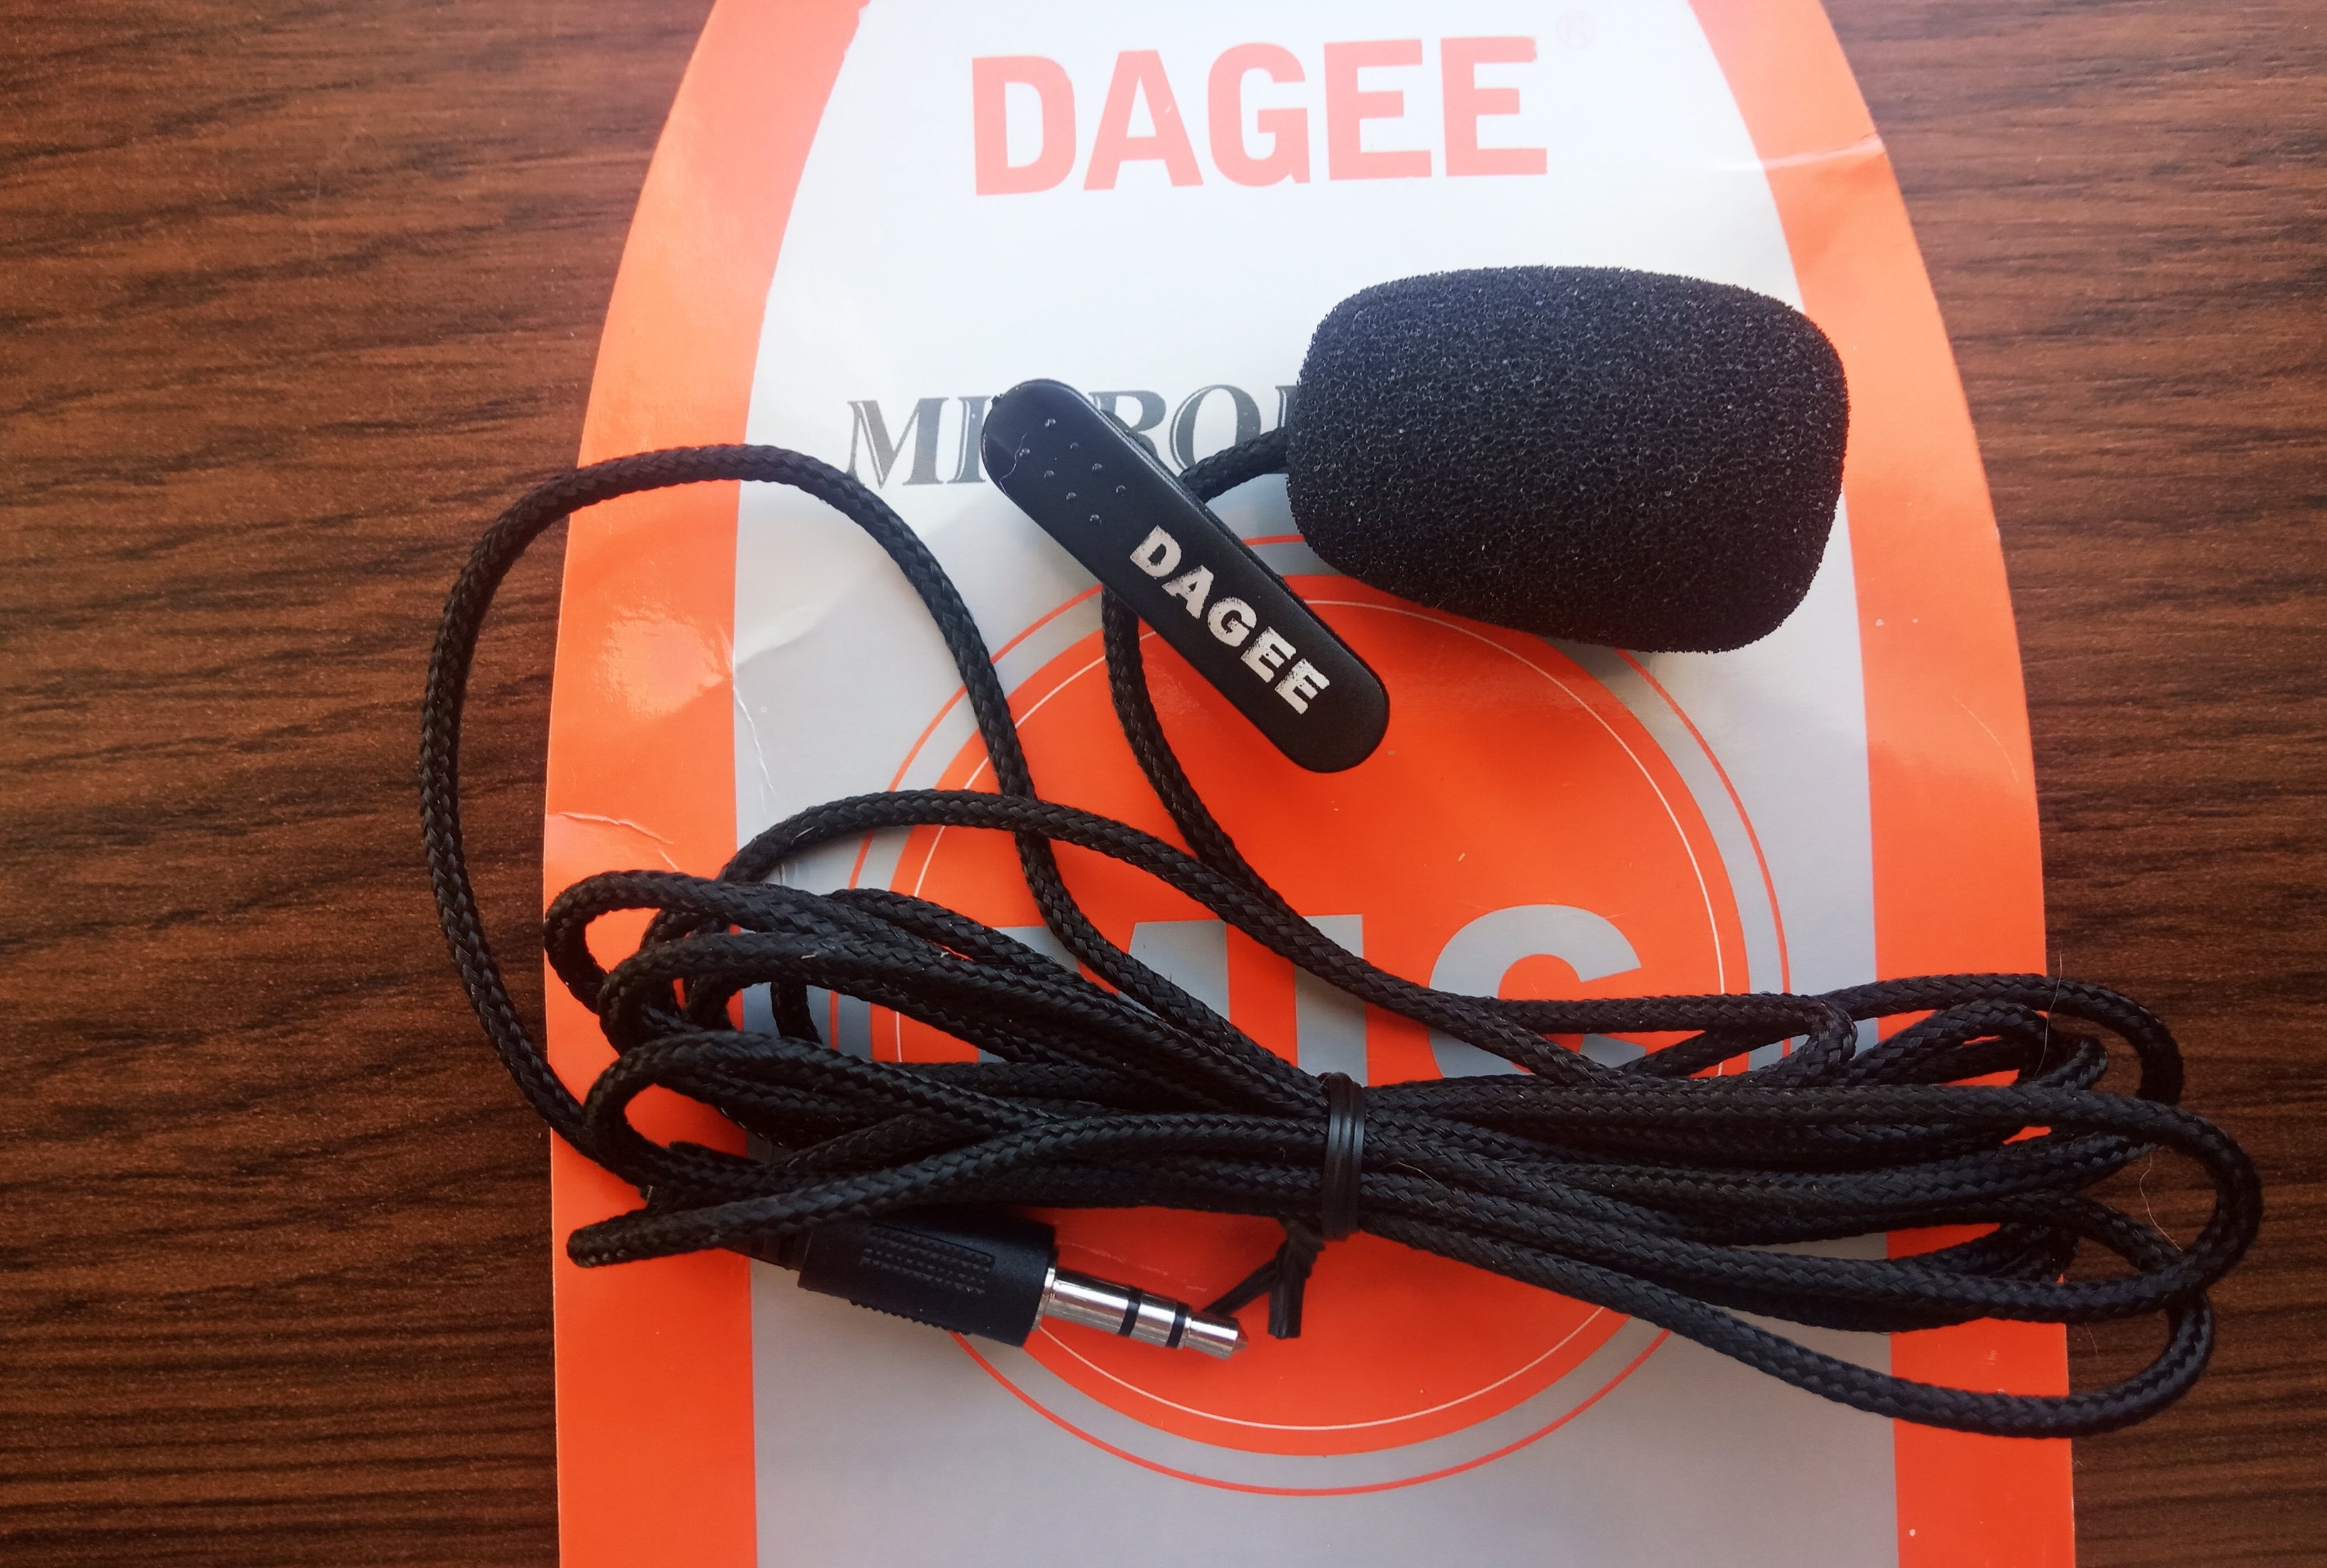 مراجعة ميكروفون التلبيب Dagee DG-001 بسعر 2 دولار 4